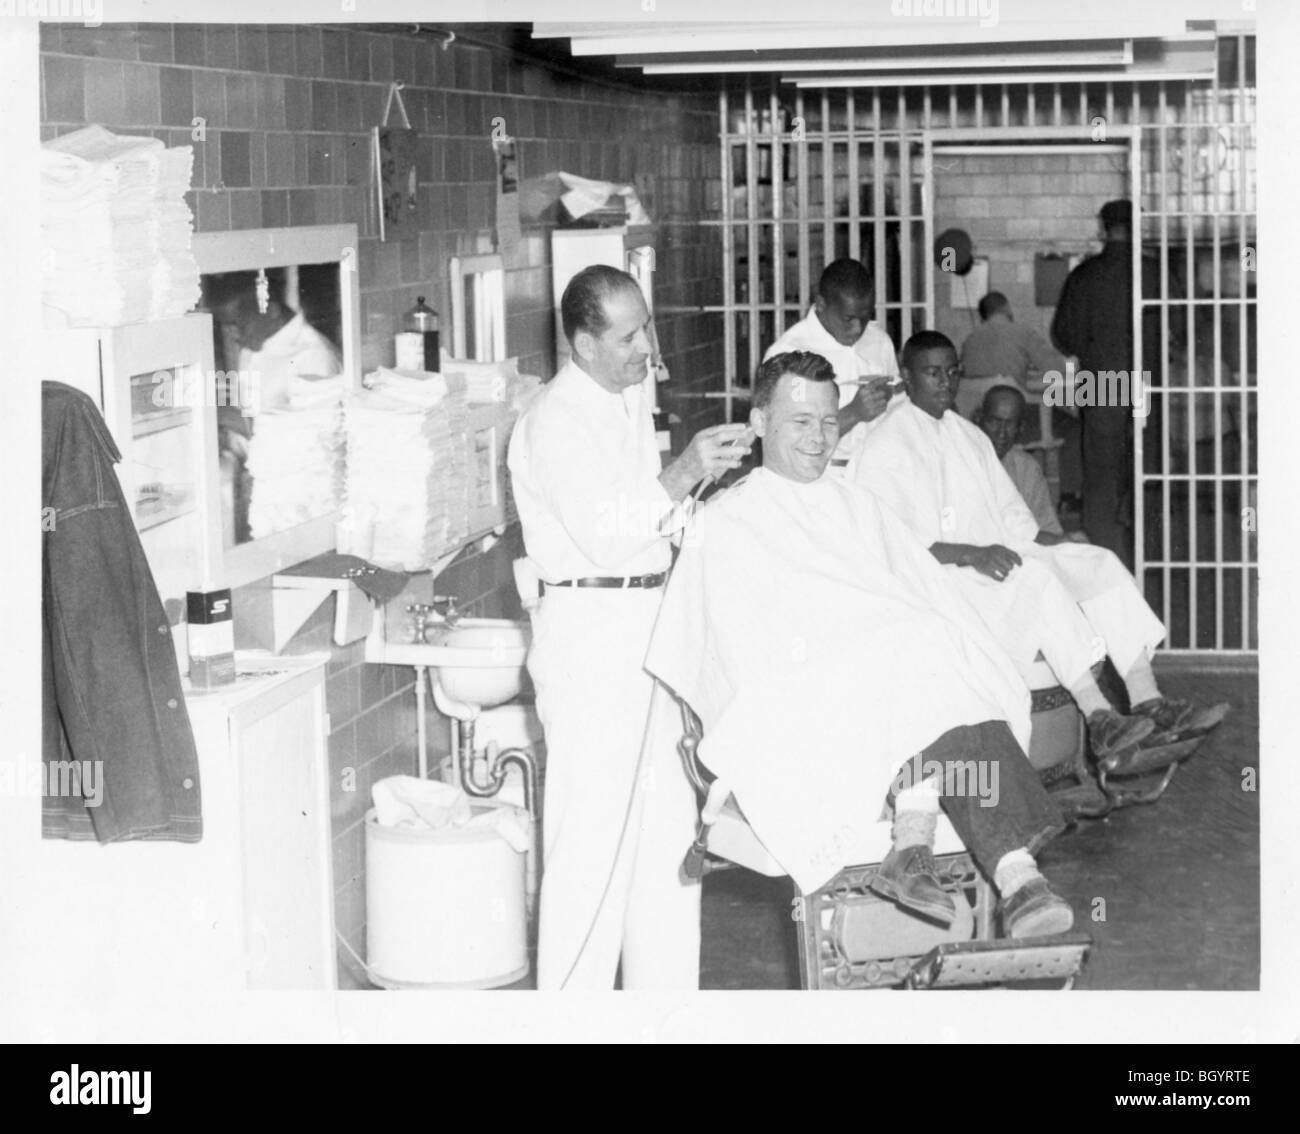 Häftling, ein Mitglied des Personals einen Haarschnitt zu geben. Metallscheren und Rasiermesser verwendet wurden. Lincoln, Nebraska, USA. Stockfoto